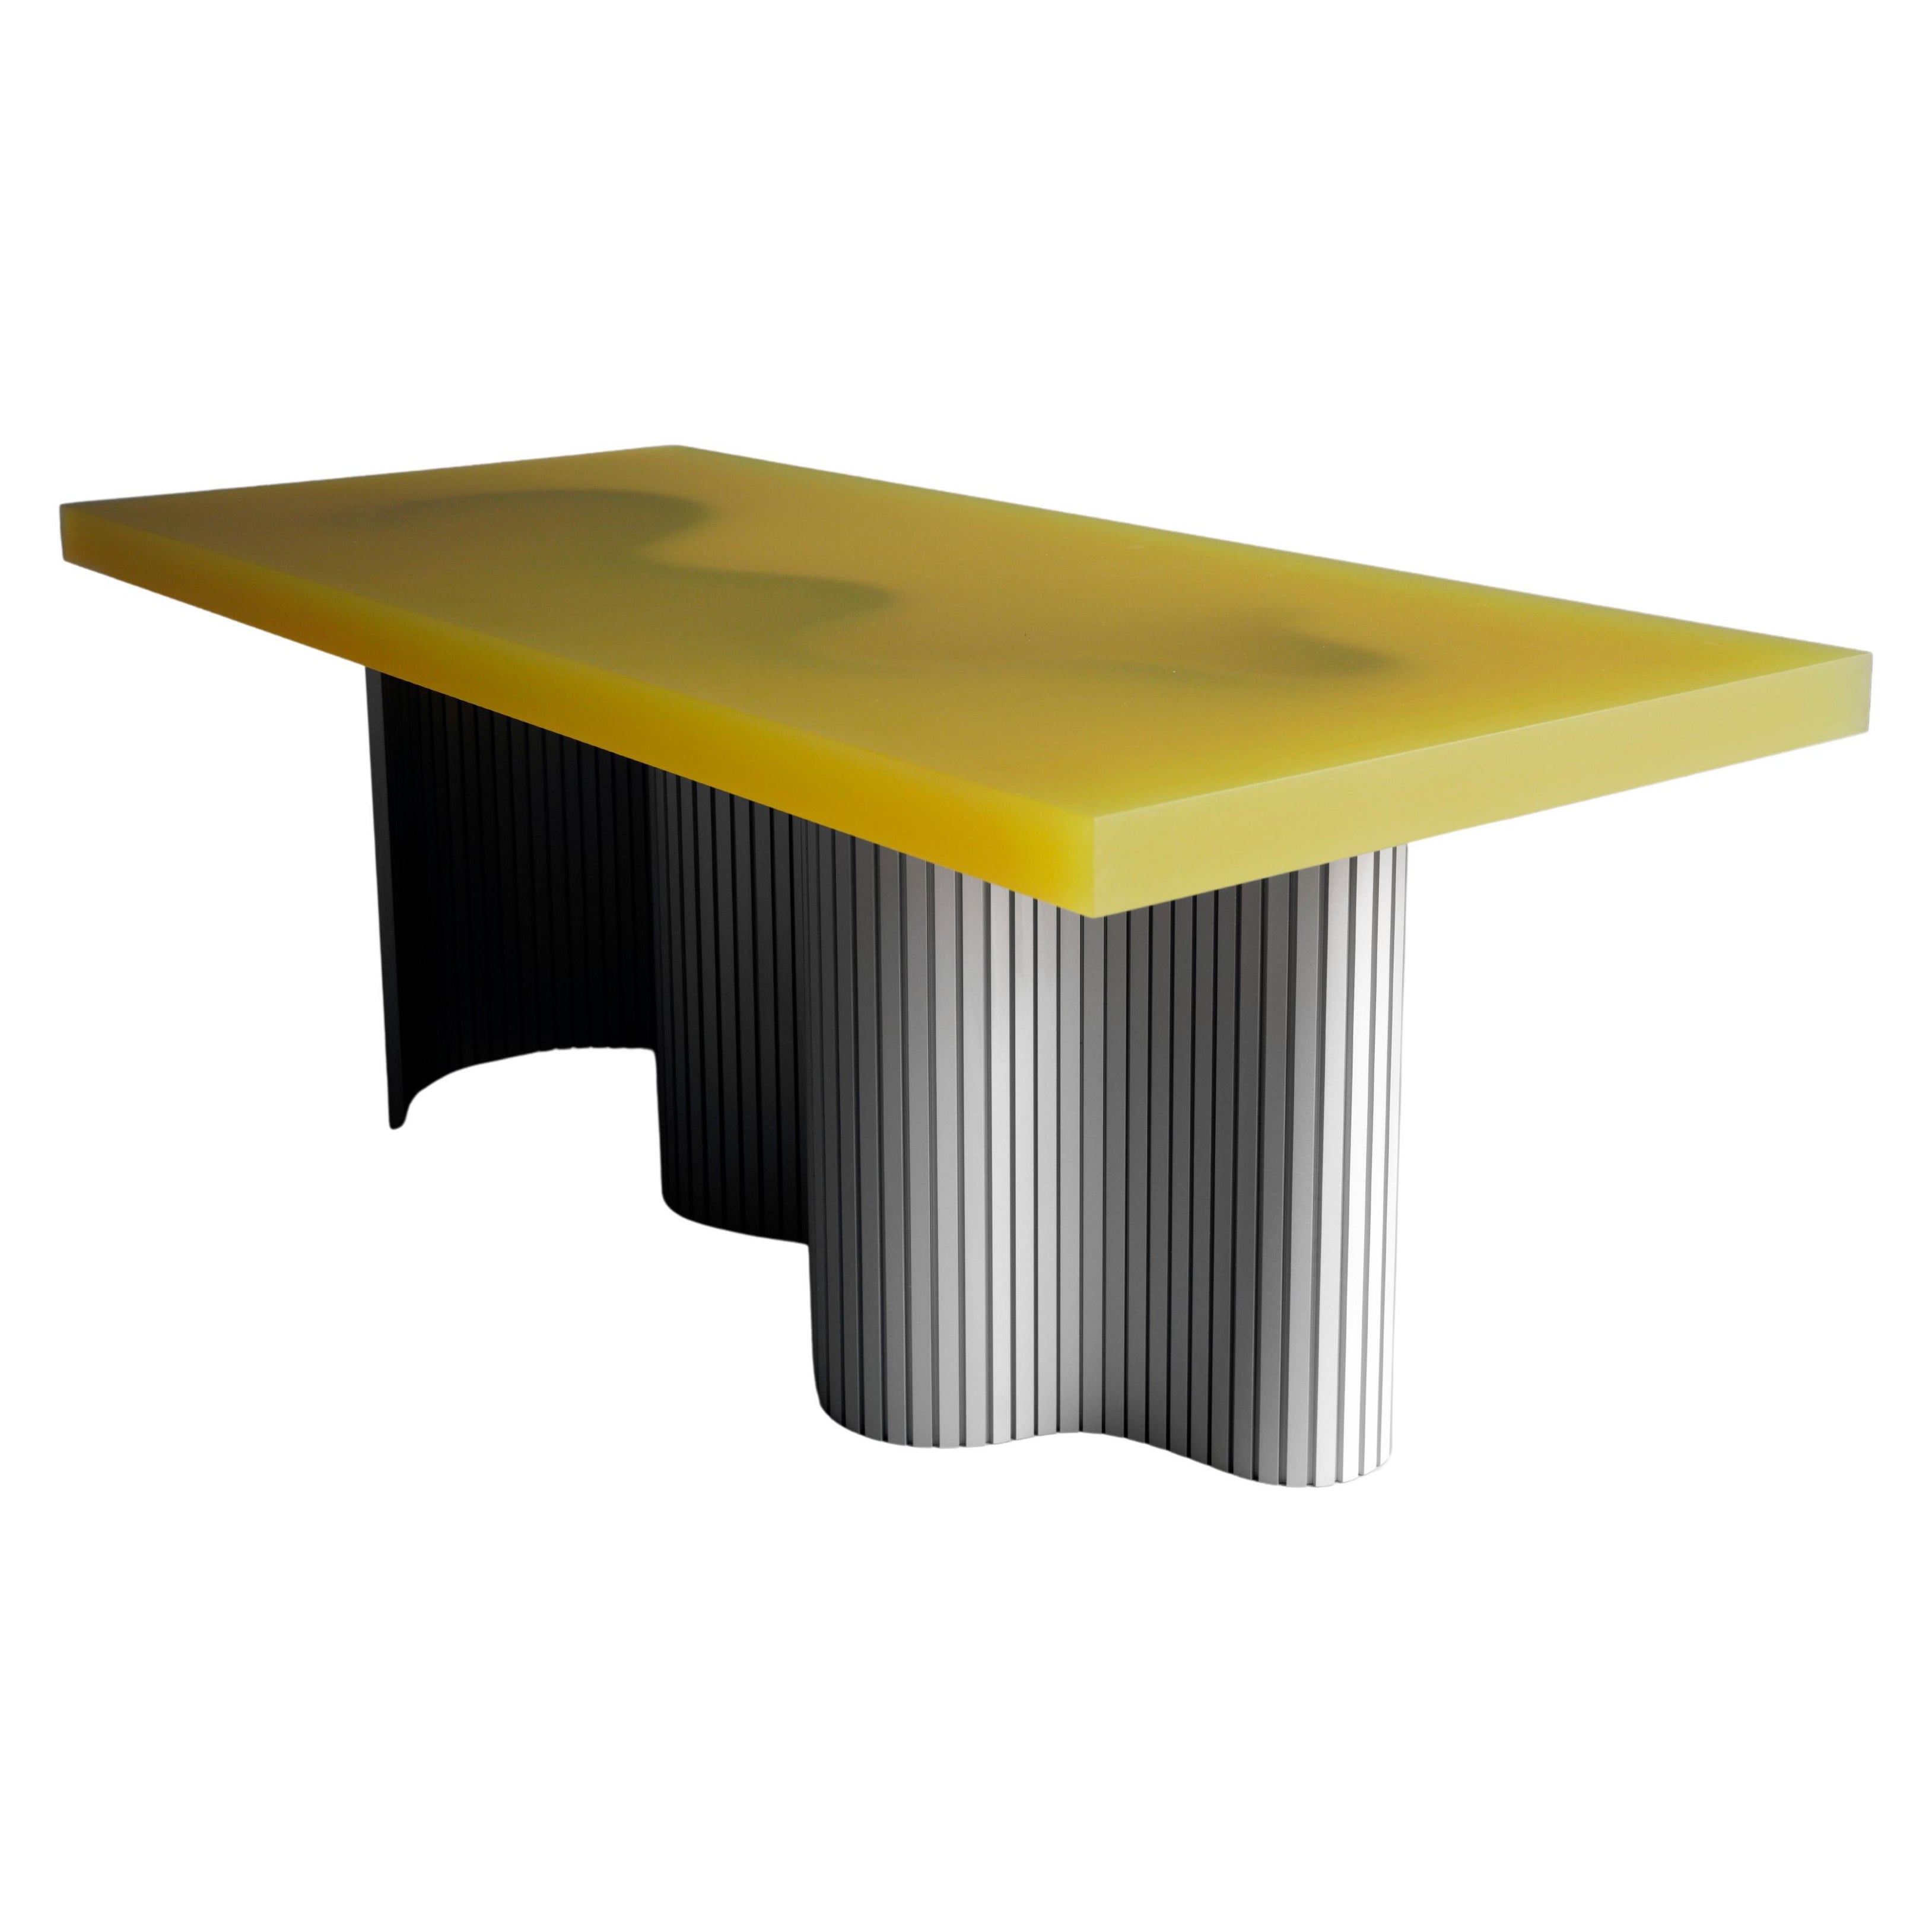 Table basse contemporaine en résine, Yellow Spine Table, Erik Olovsson